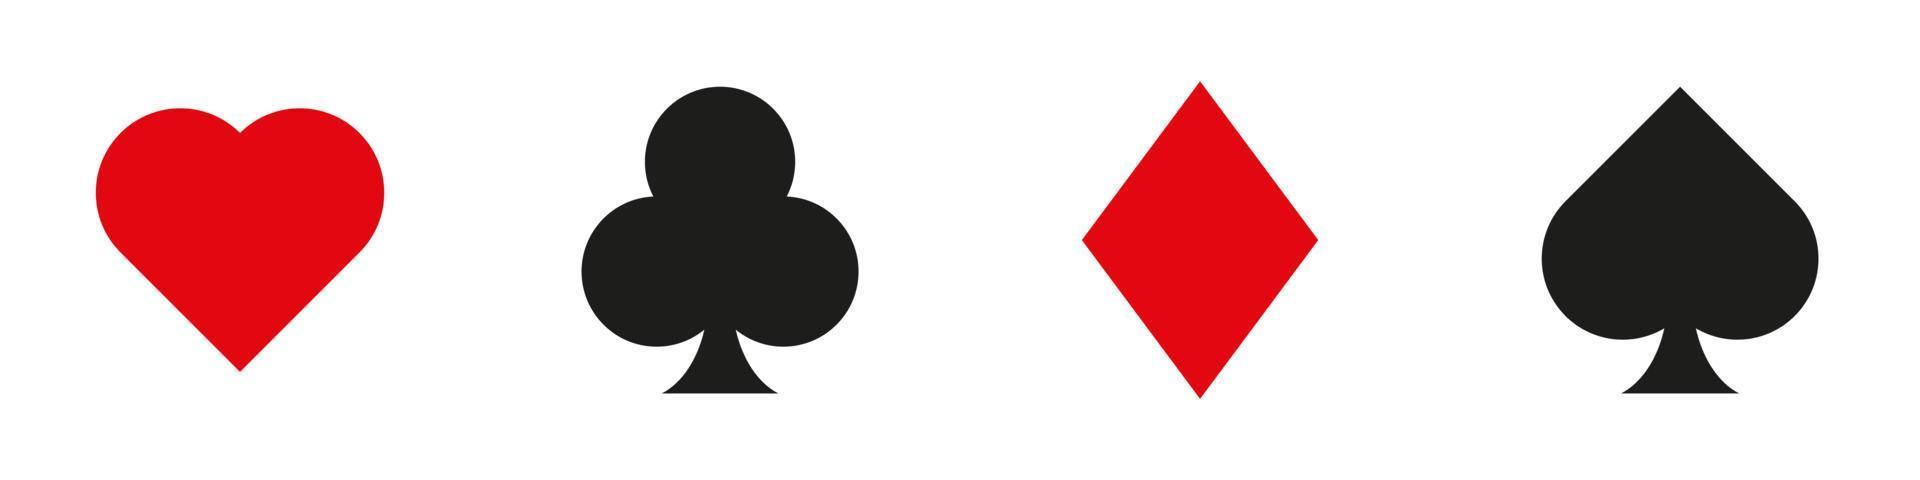 satz spielkartensymbole lokalisiert auf weißem hintergrund. Vektorsymbole. Pokerkarten. Herz, Karo, Pik, Keule vektor